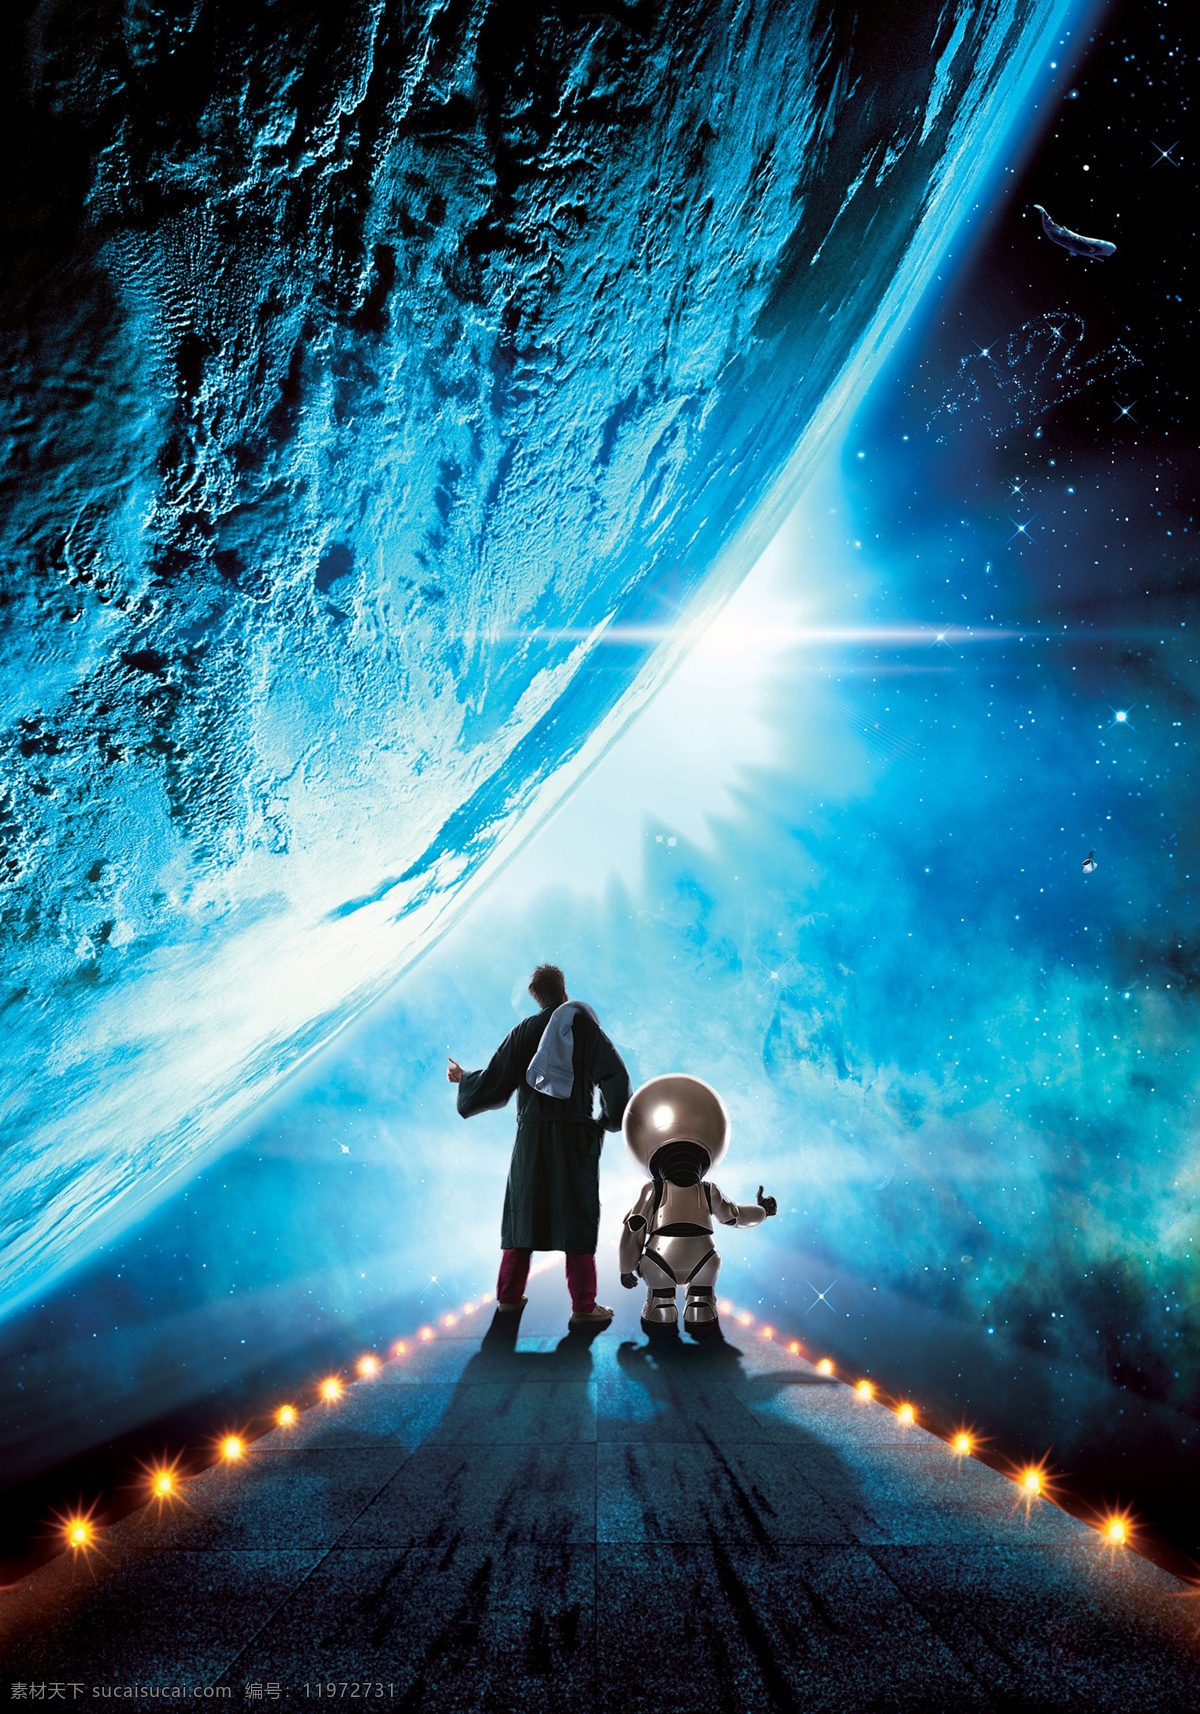 银河系 漫游 指南 星际奇航 机器人 科幻 电影 电影海报 电影海报素材 文化艺术 影视娱乐